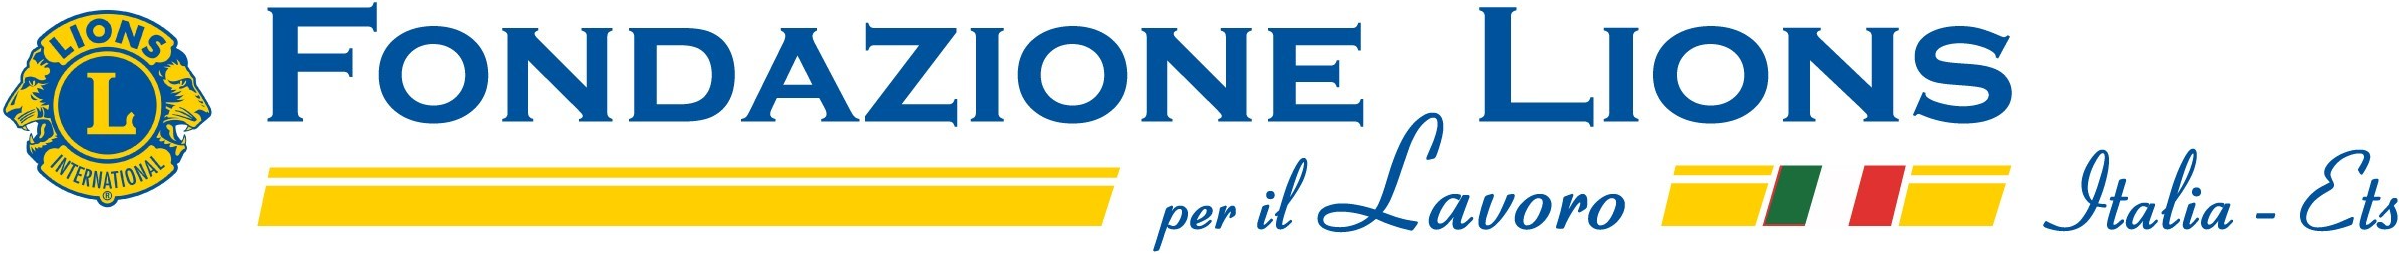 Fondazione Lions per il Lavoro Italia Ets